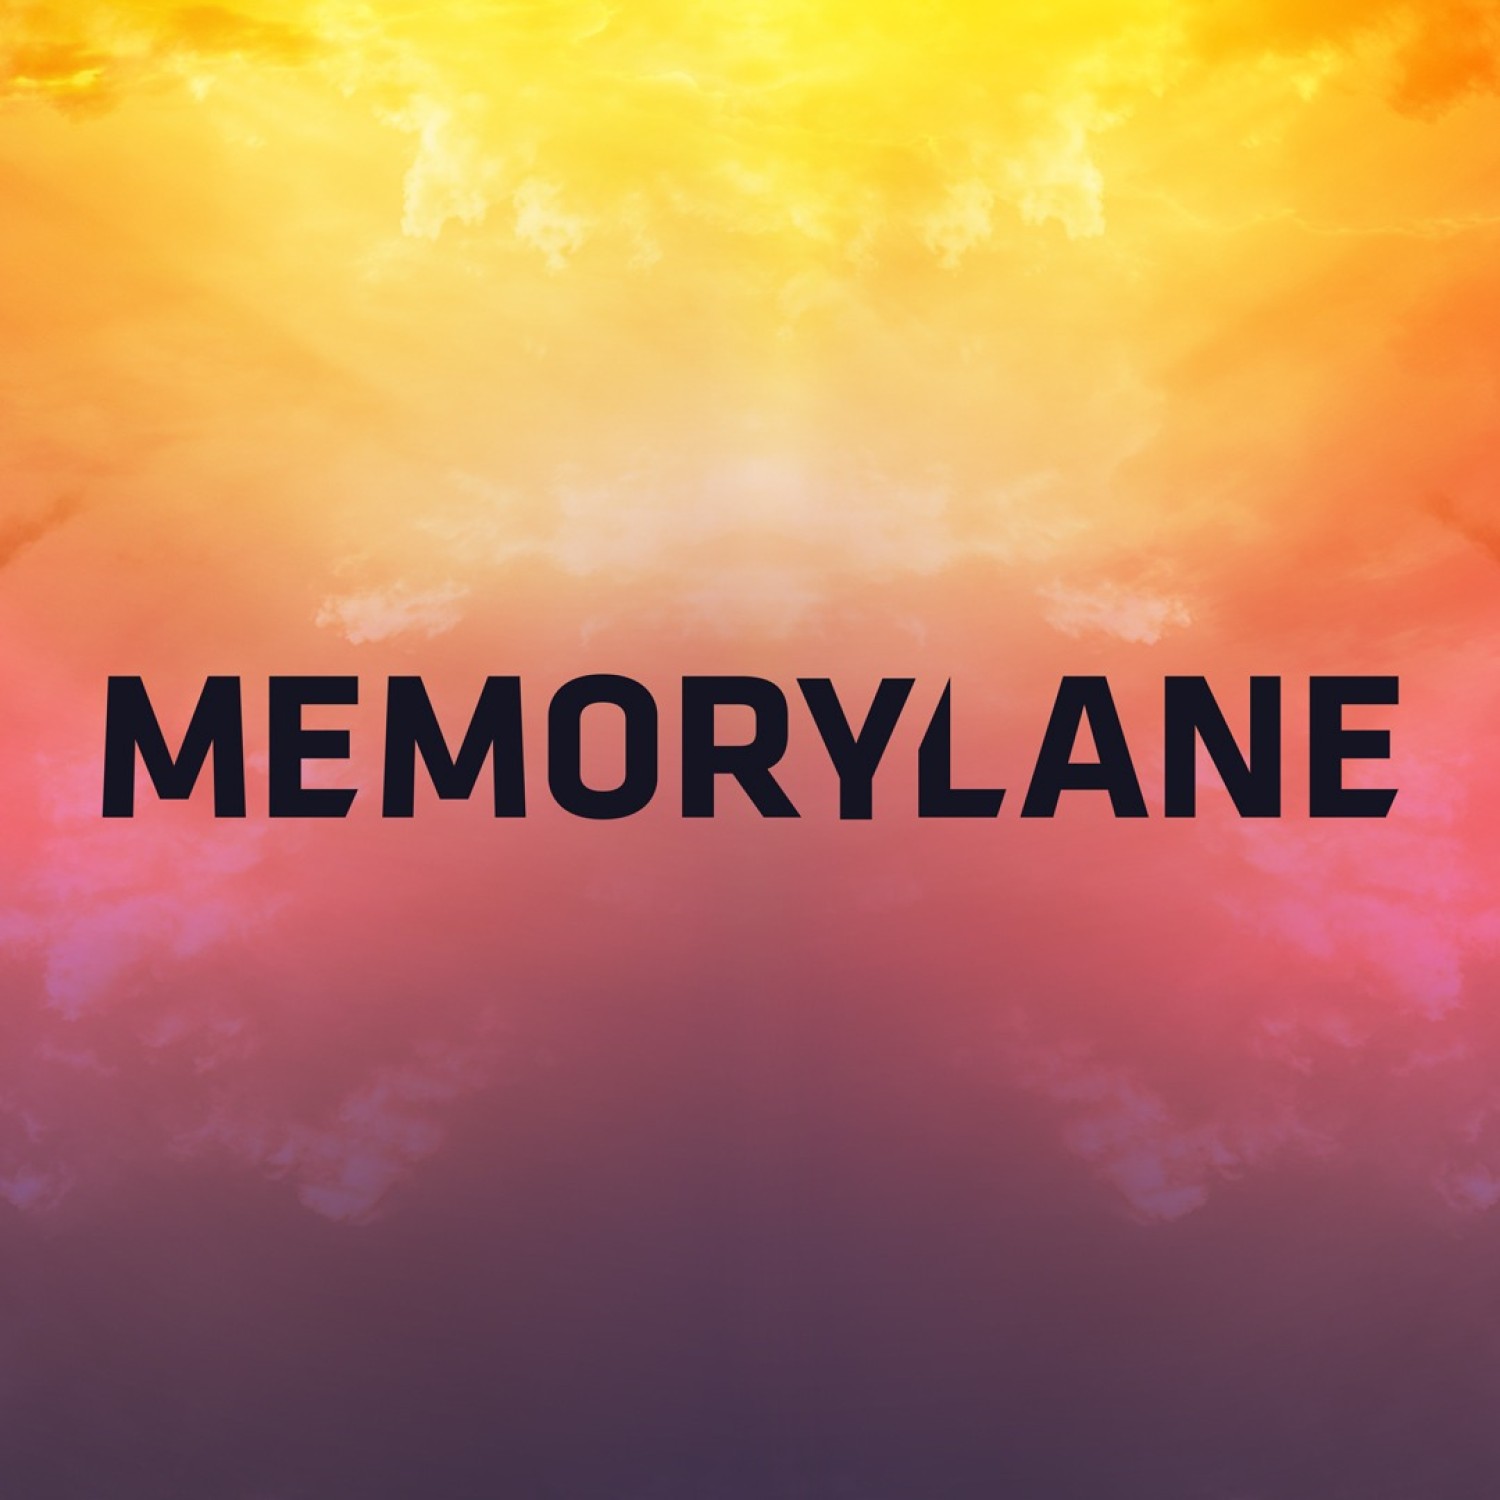 Memorylane